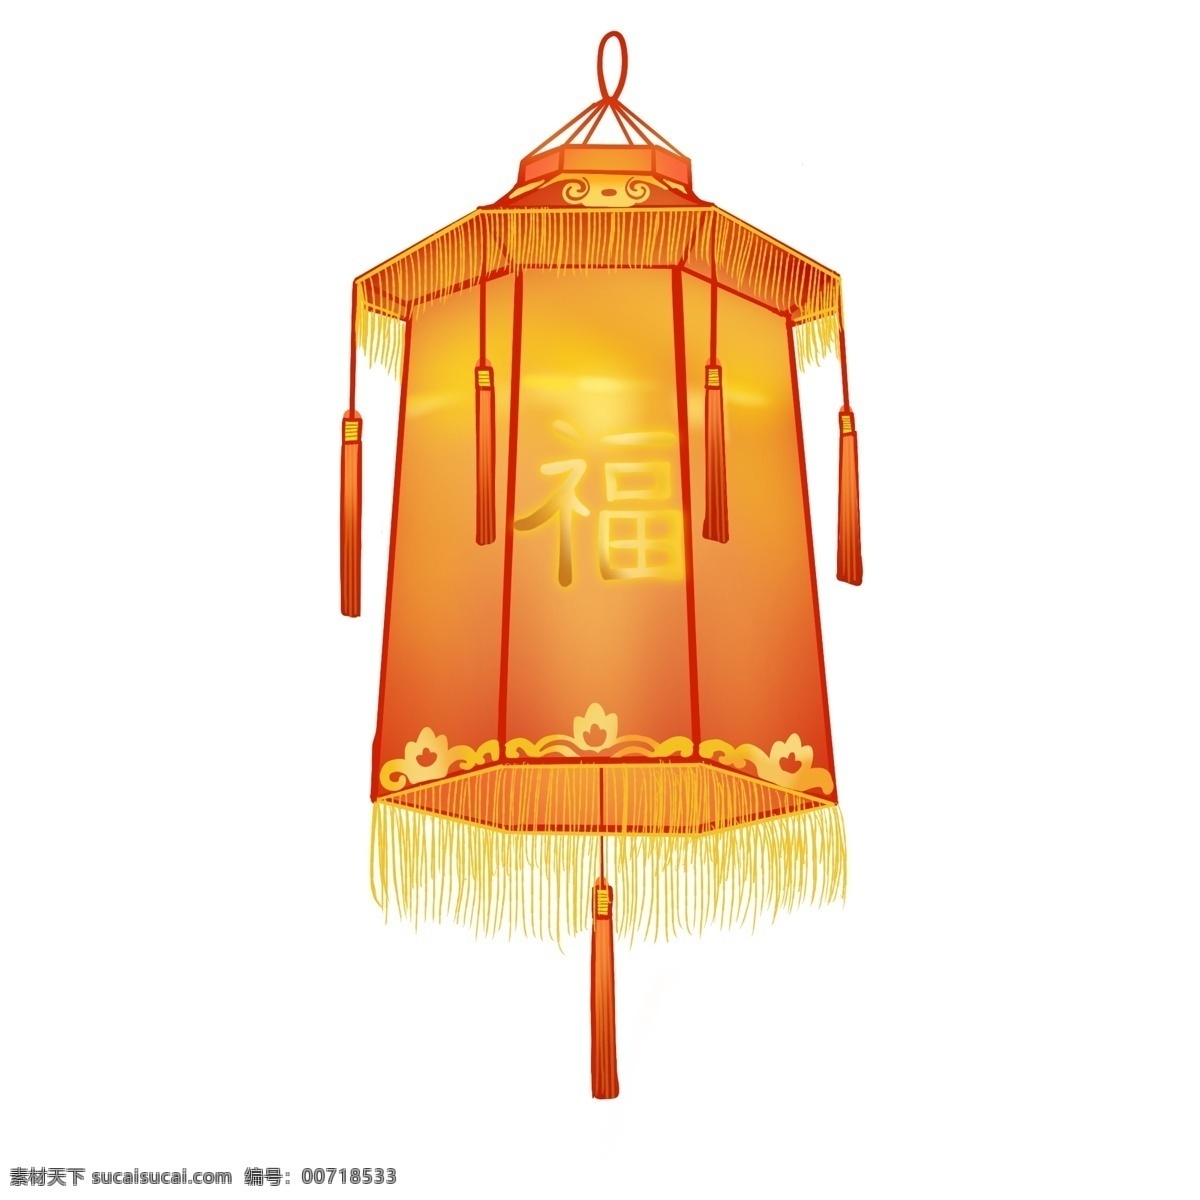 福字灯笼 白色 春节 福 福字 福字模板下载 恭贺新年 过年 节日素材 花纹 amp 背景 免 抠 图